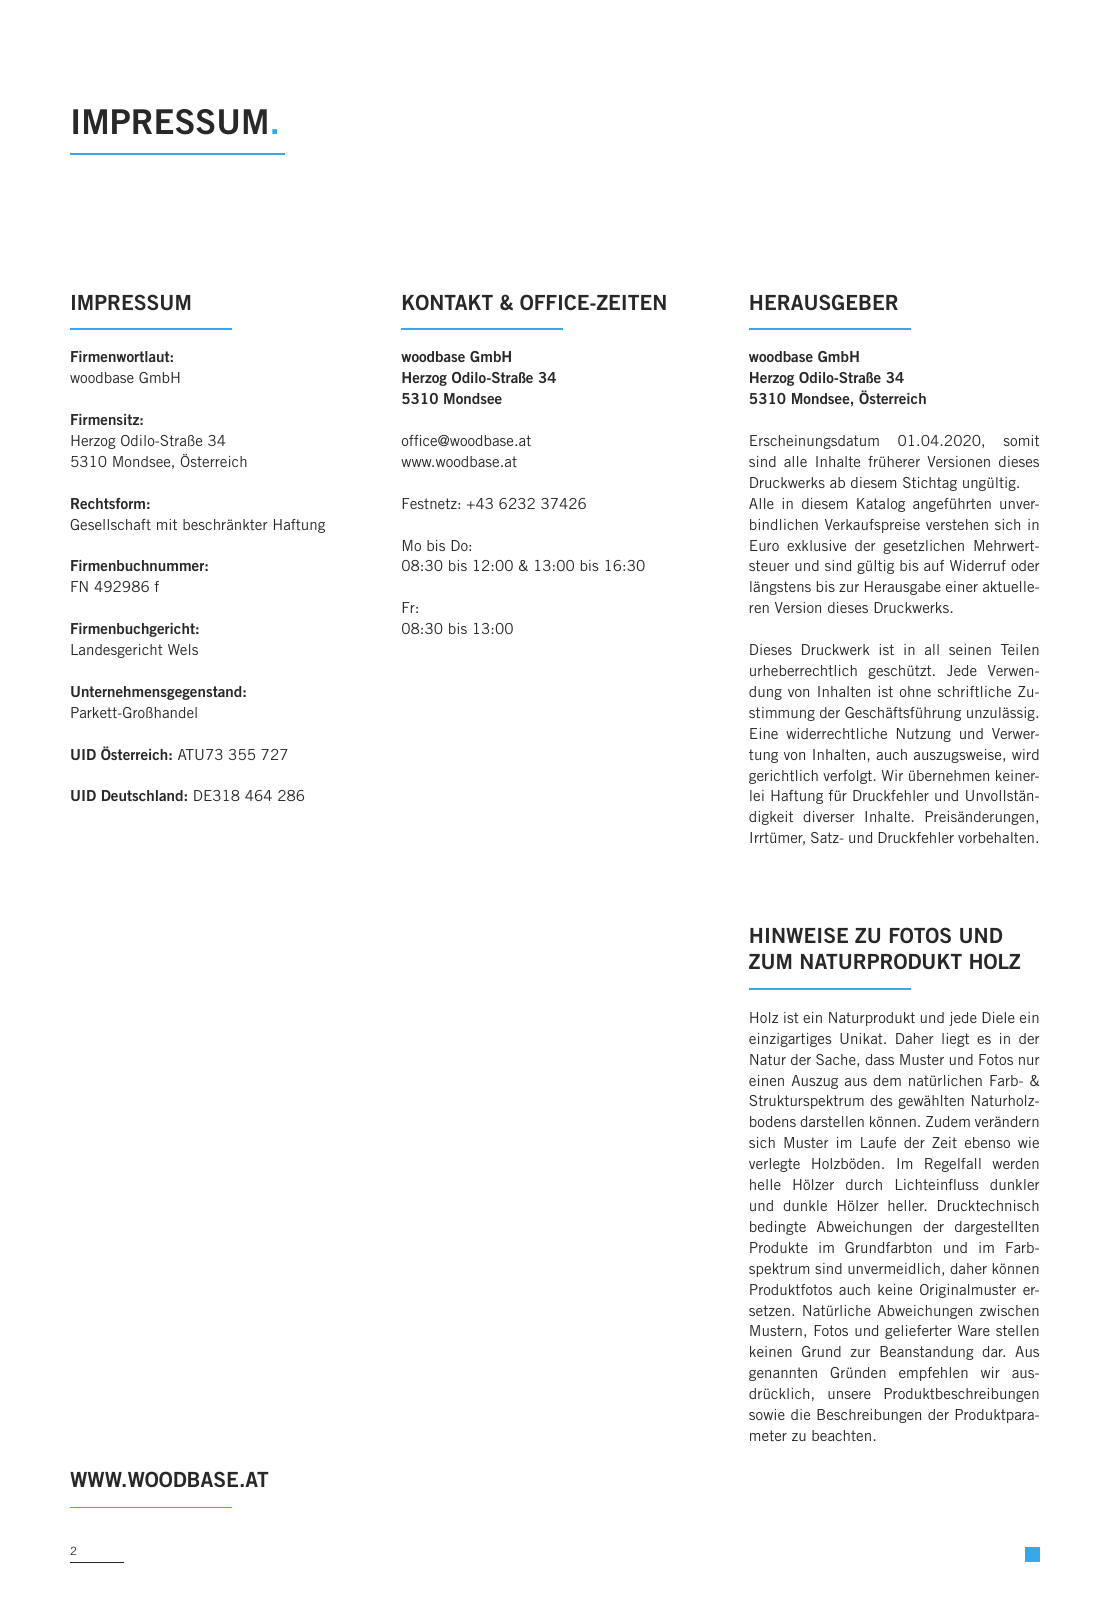 Vorschau WOODBASE LAGERSORTIMENT 2020/2021 Seite 2